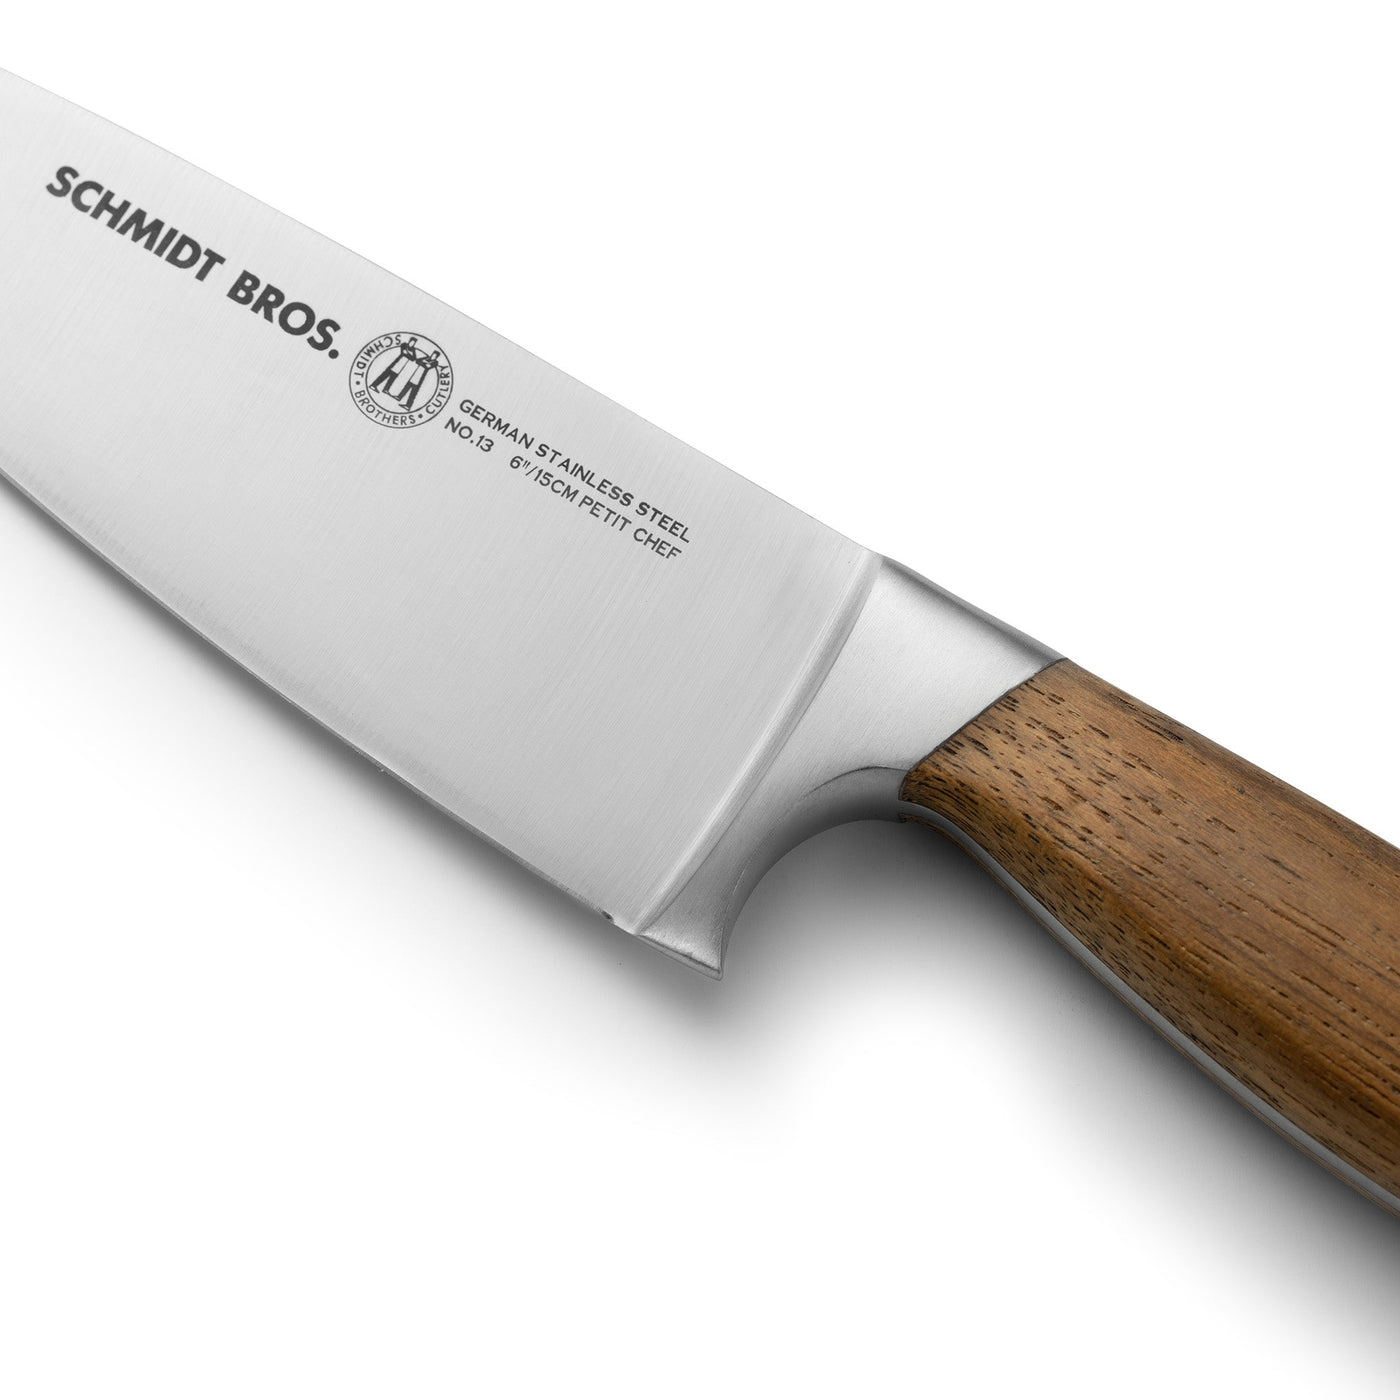 Elite Knife Set, Shop Kitchenware